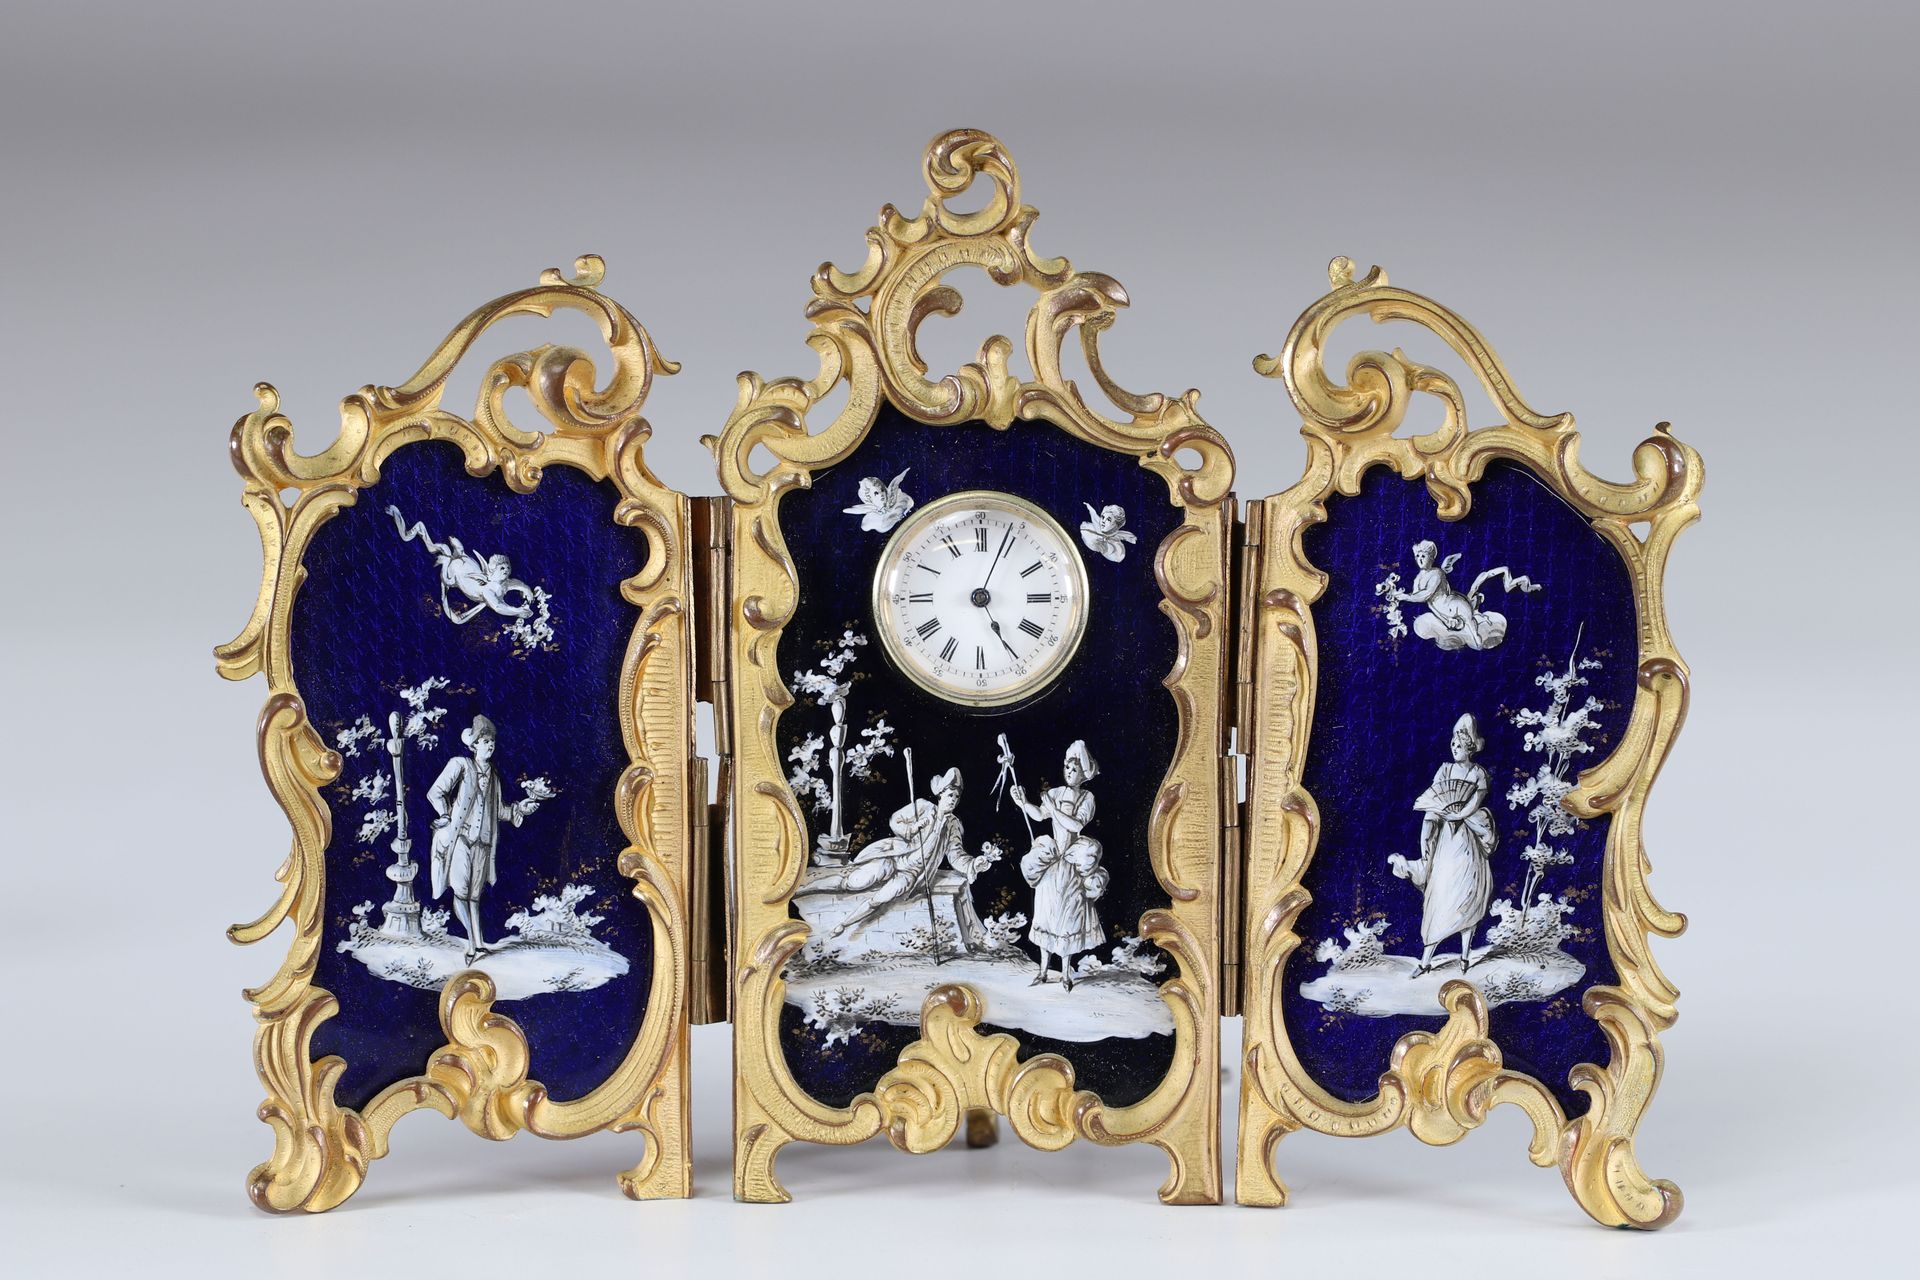 Pendule de bureau triptyque en émail "scène galante Louis XV" 珐琅三联画台钟 "英勇的路易十五"
&hellip;